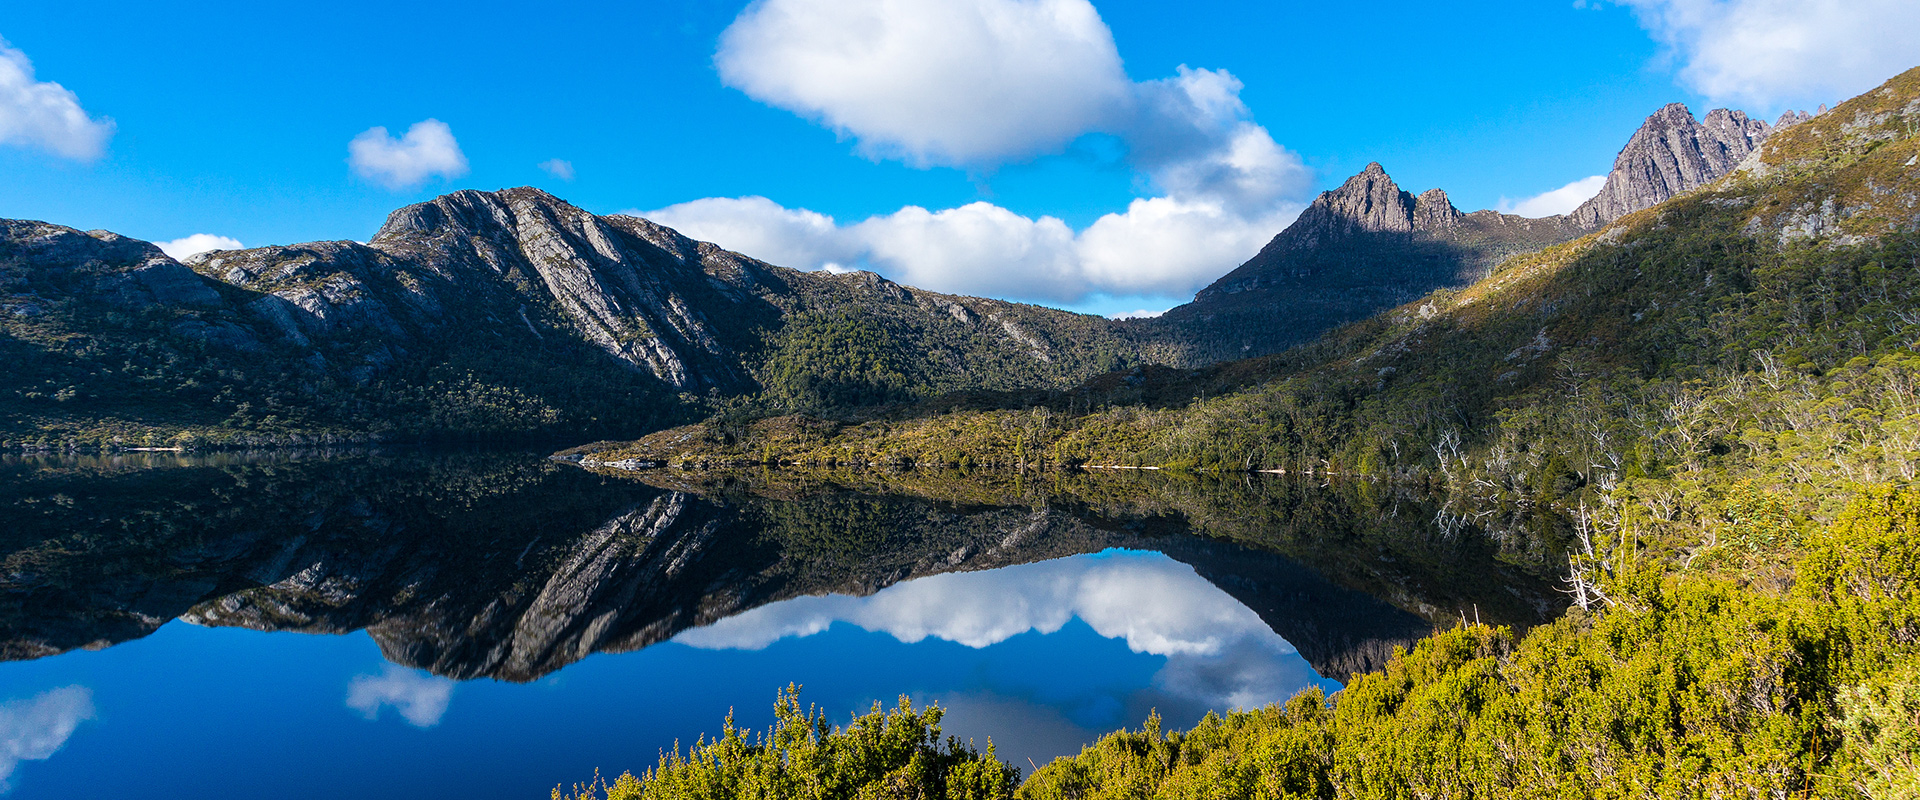 Cradle Mountain reflection on lake, Tasmania